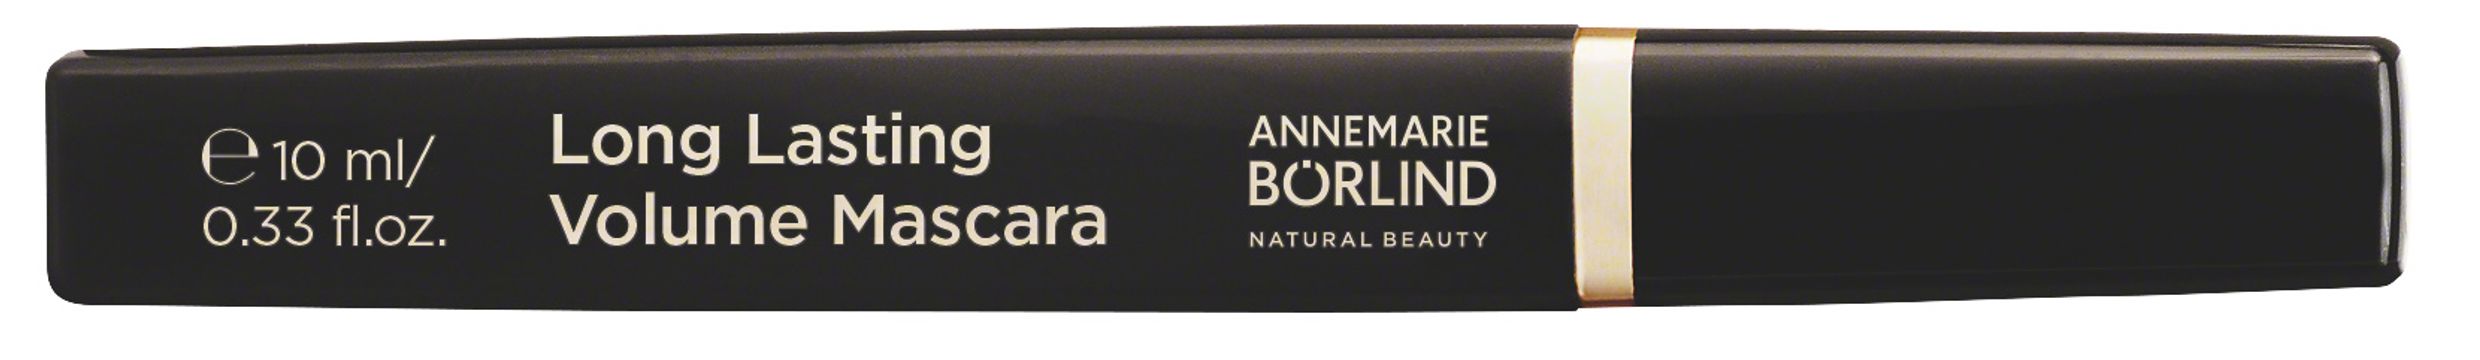 Annemarie Börlind Long Lasting Volume Mascara black 10